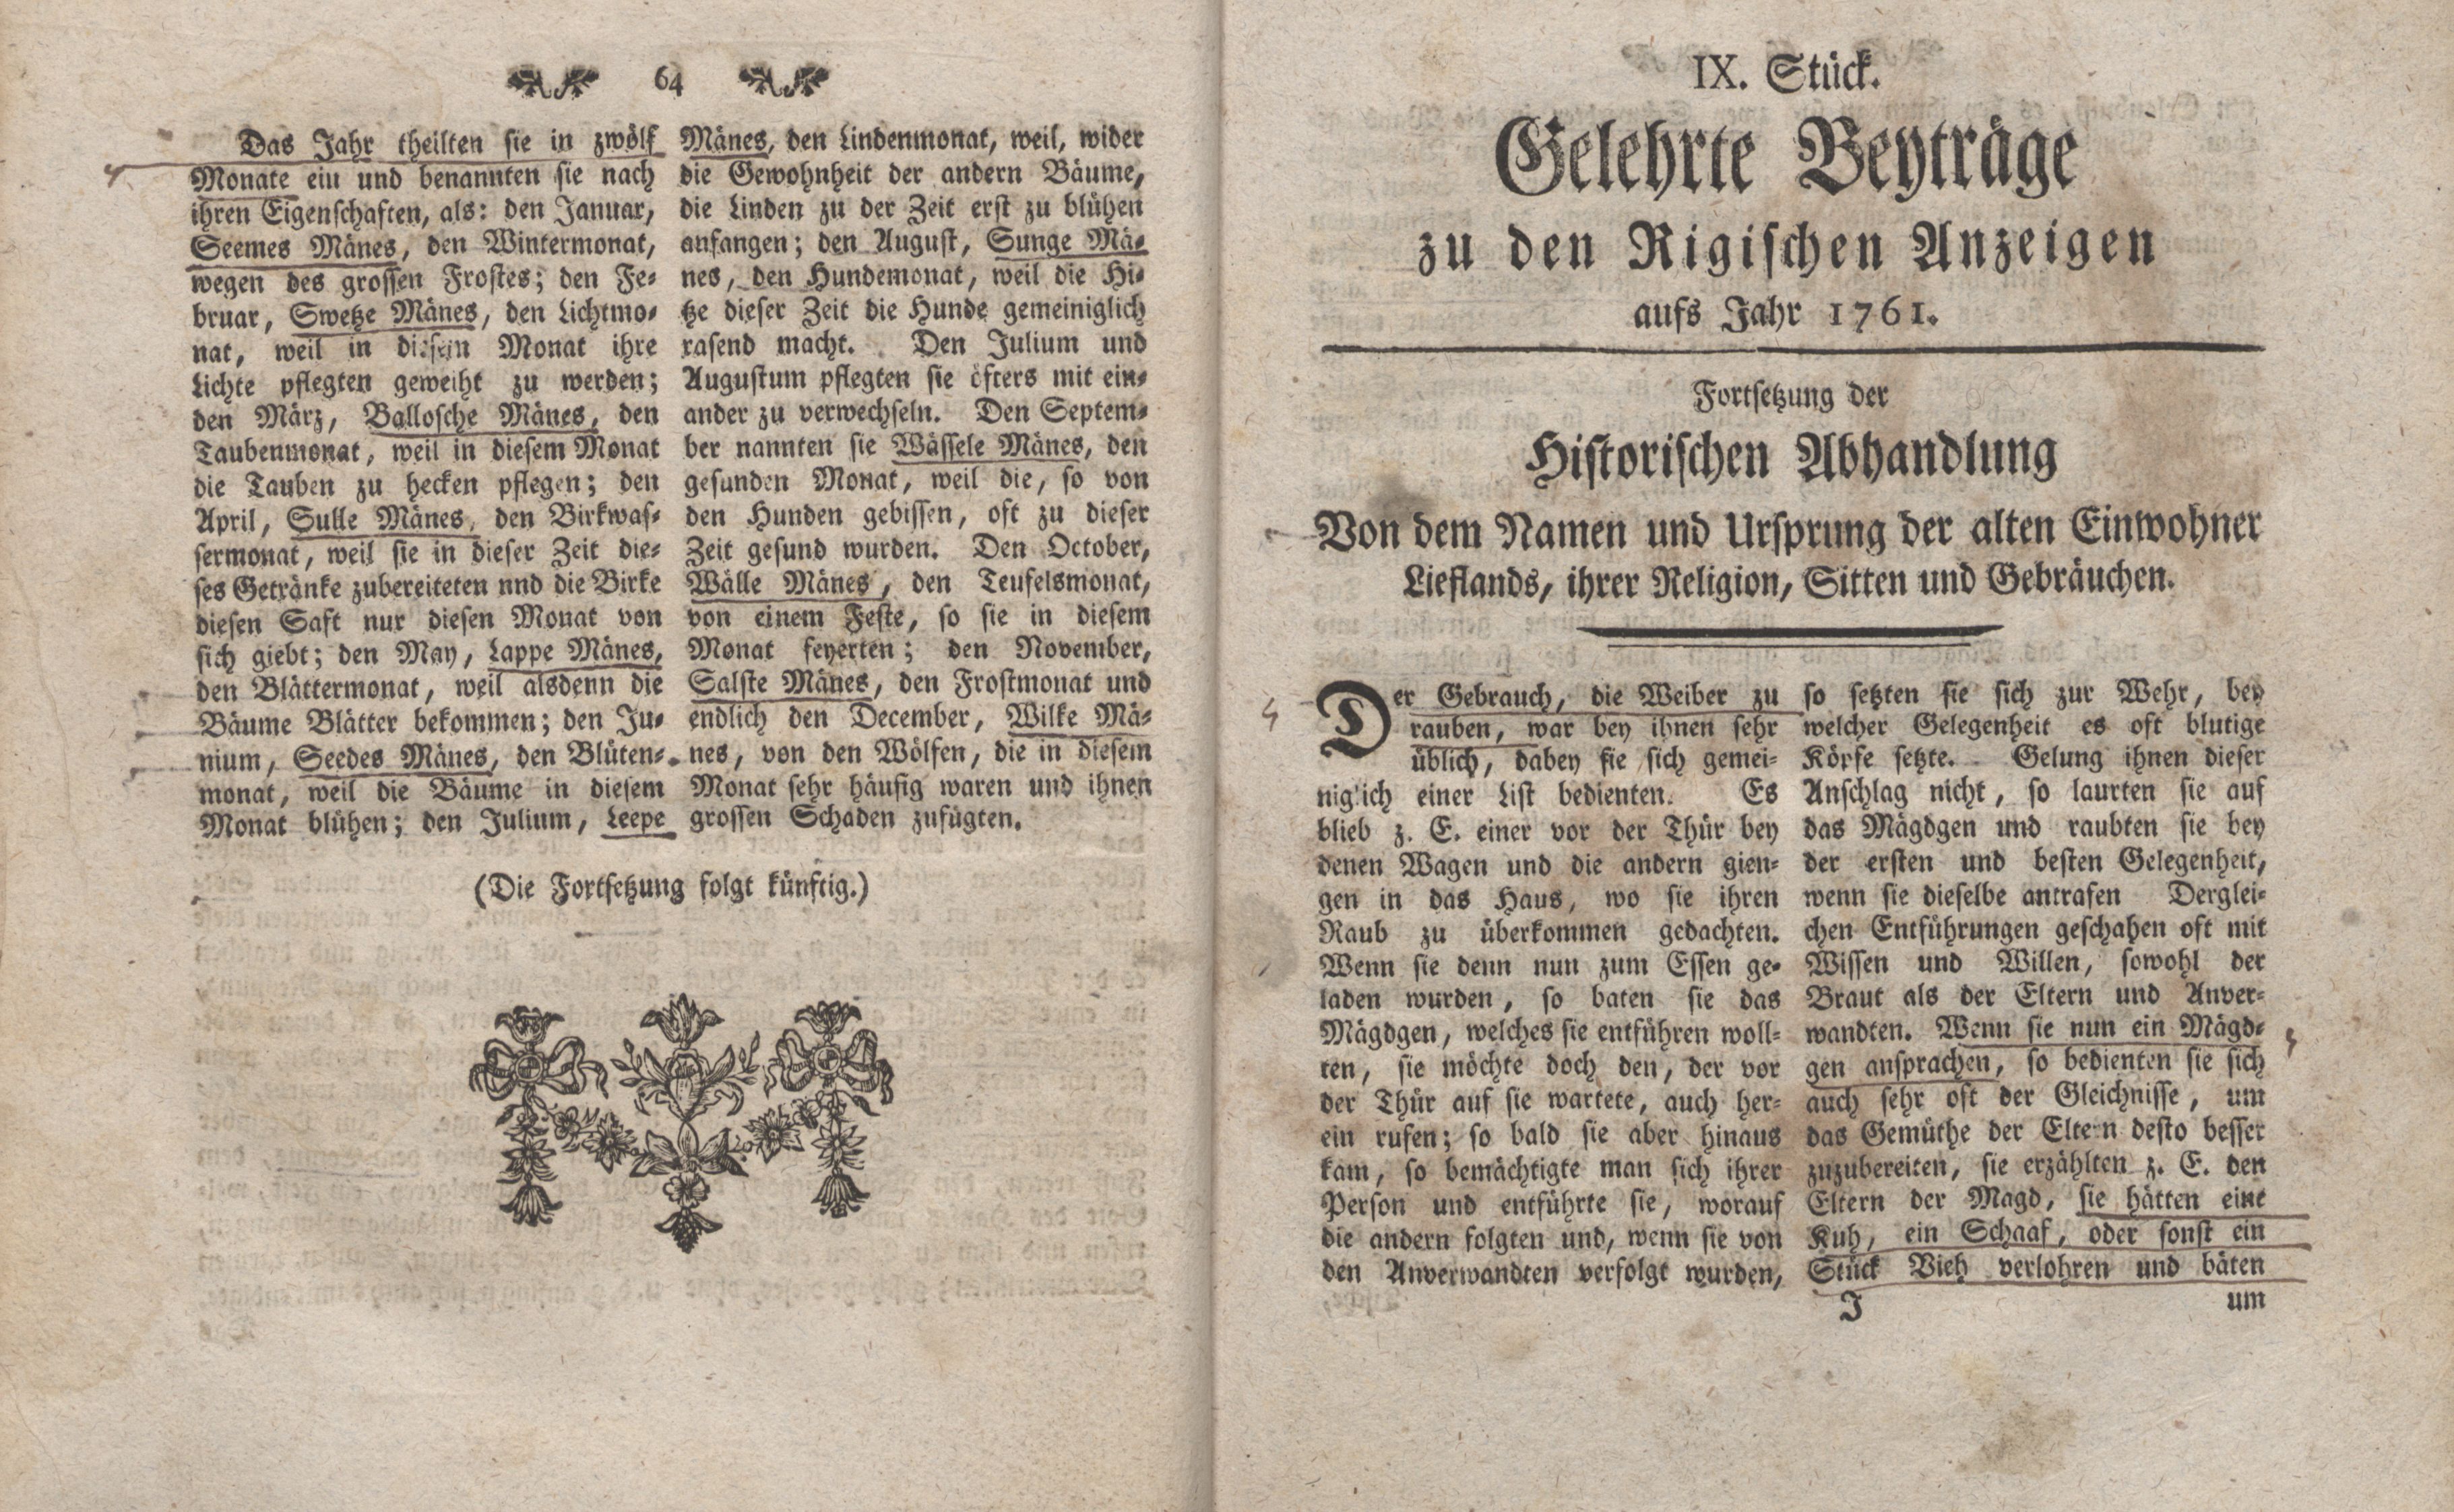 Gelehrte Beyträge zu den Rigischen Anzeigen 1761 (1761) | 32. (64-65) Main body of text